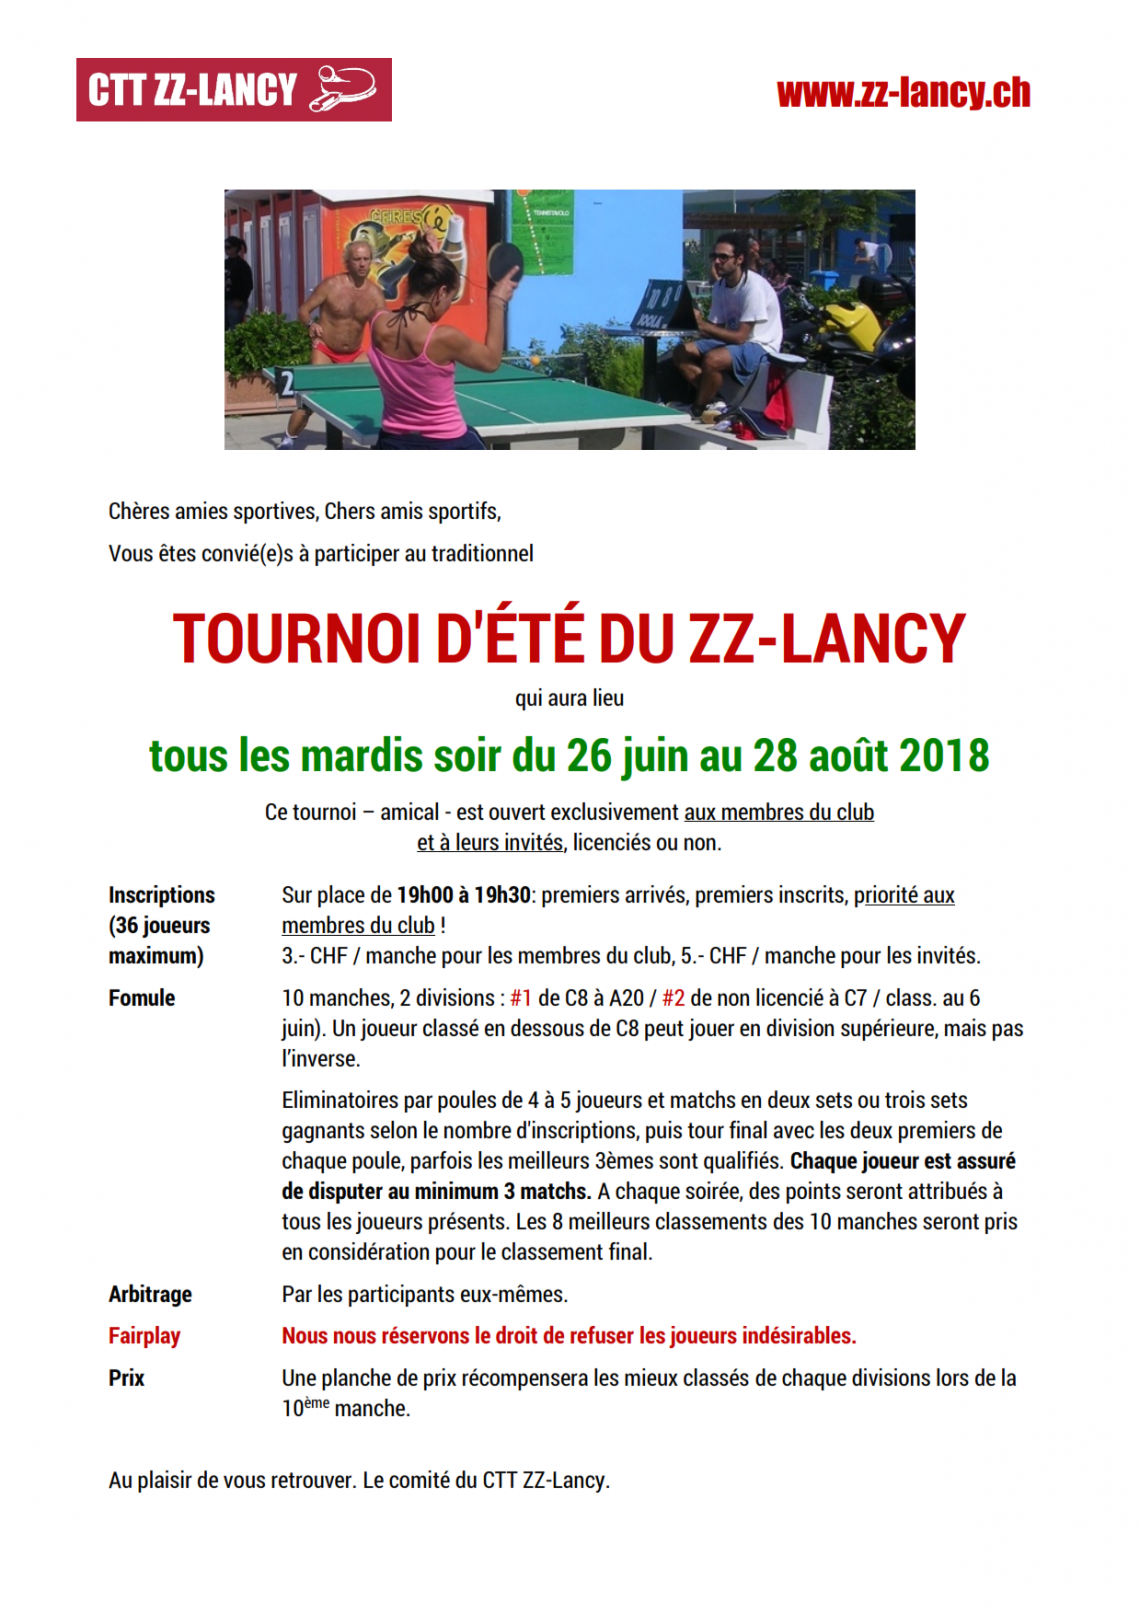 Invitation au Tournoi d'été 2018 du CTT ZZ-Lancy